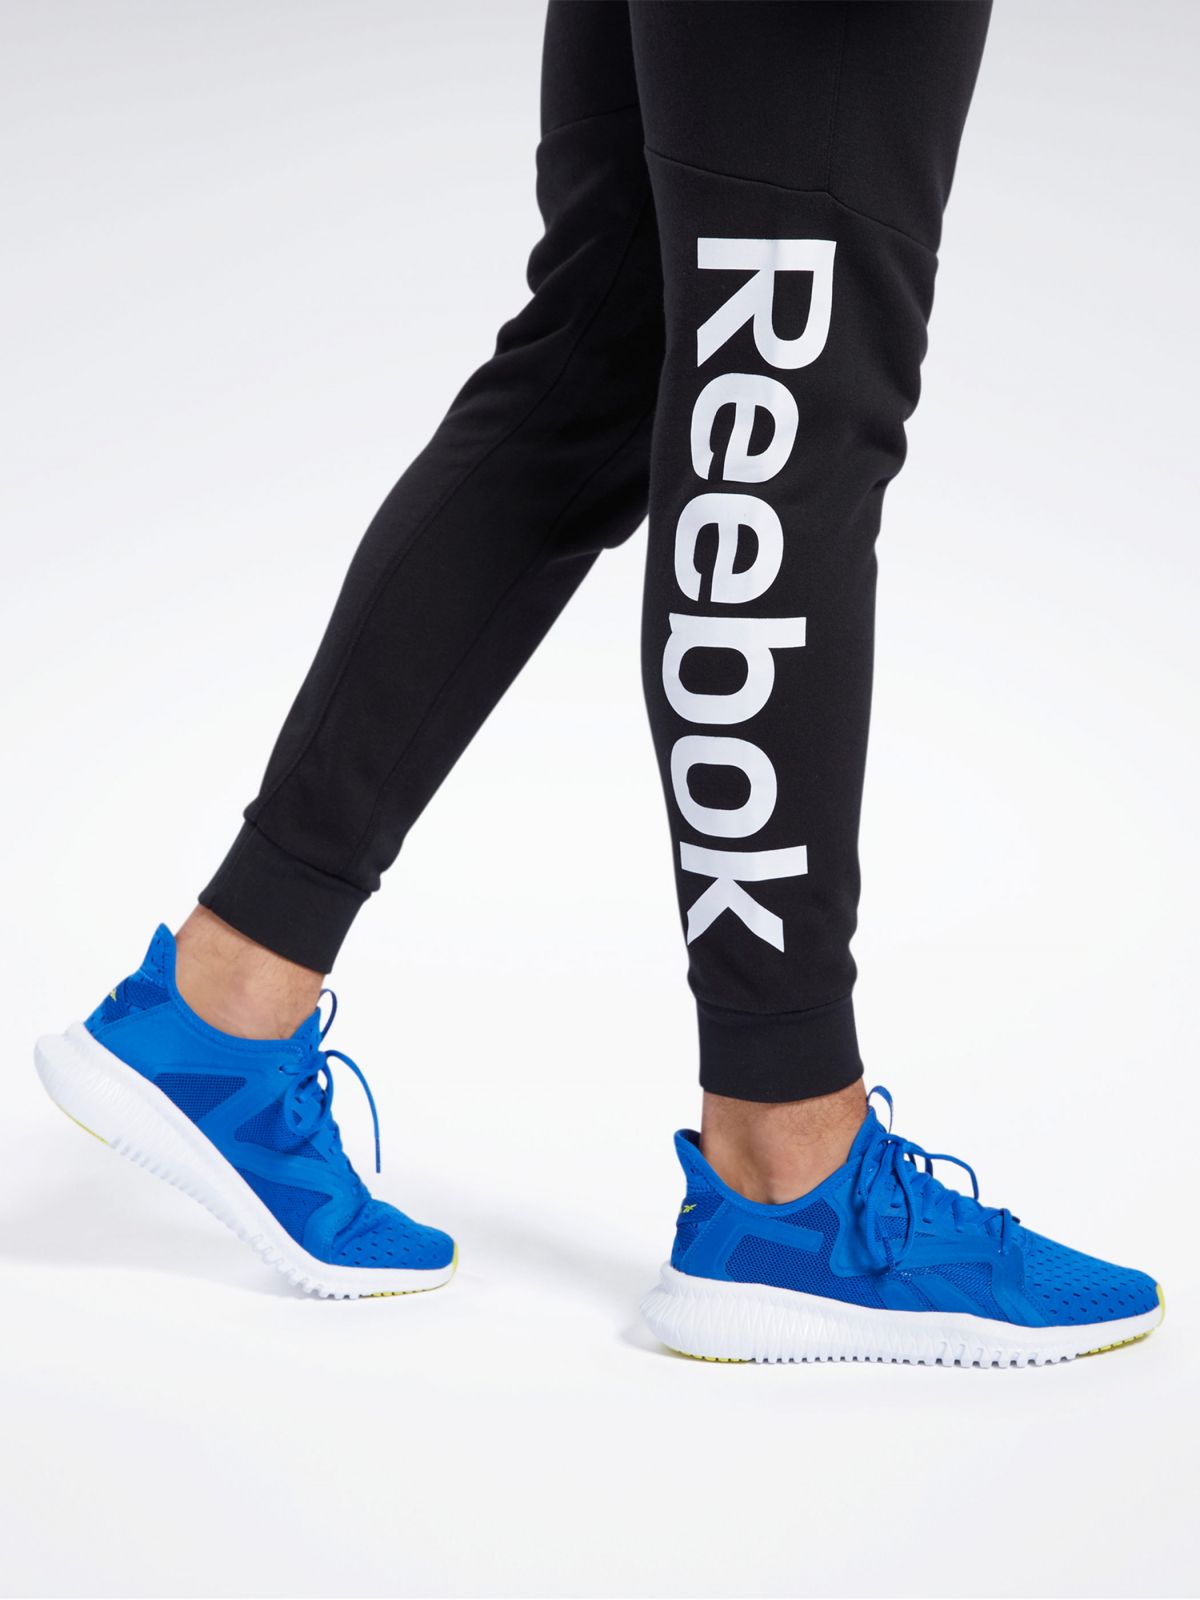  מכנסי טרנינג ארוכים עם הדפס לוגו של REEBOK